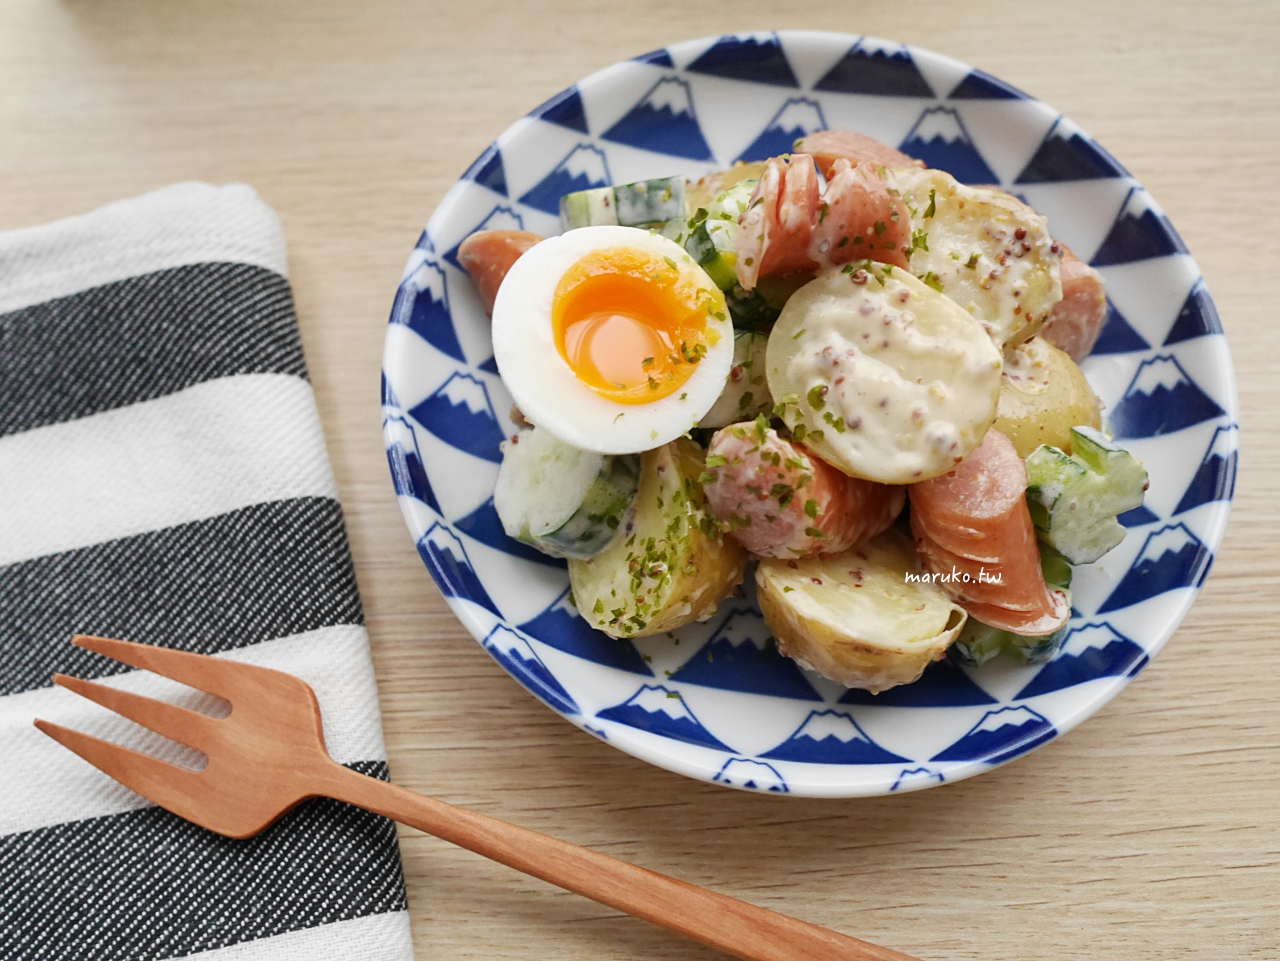 【食譜】馬鈴薯沙拉 夏天清爽涼拌開胃菜 法式芥末子醬運用分享 @Maruko與美食有個約會